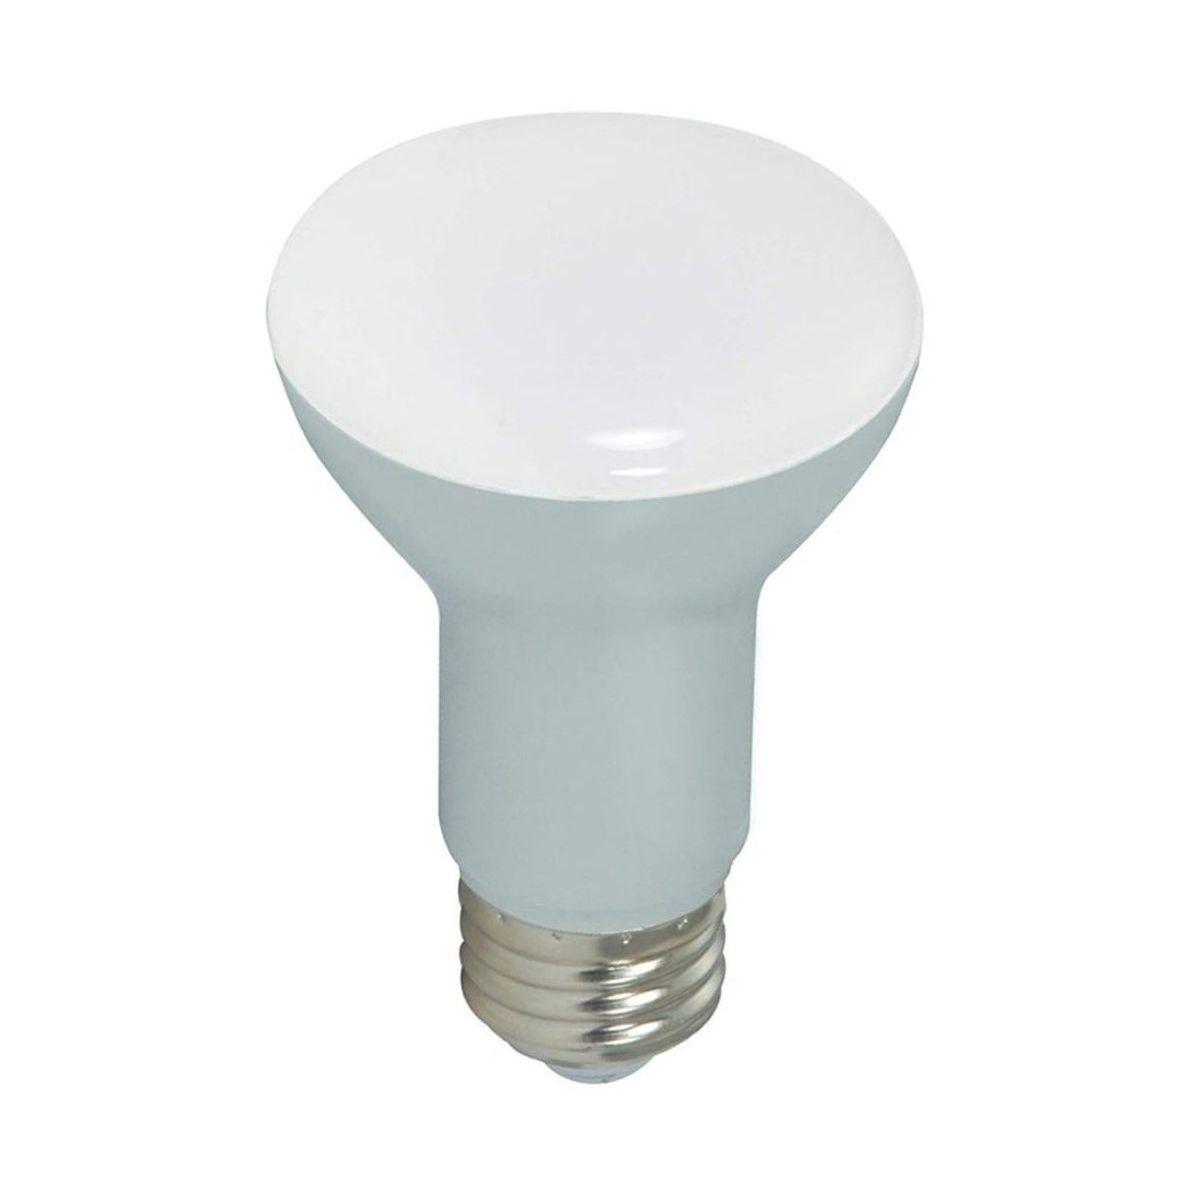 LED R20/BR20 Reflector bulb, 7 watt, 525 Lumens, 2700K, E26 Medium Base, 107 Deg. Flood, Dimmable - Bees Lighting